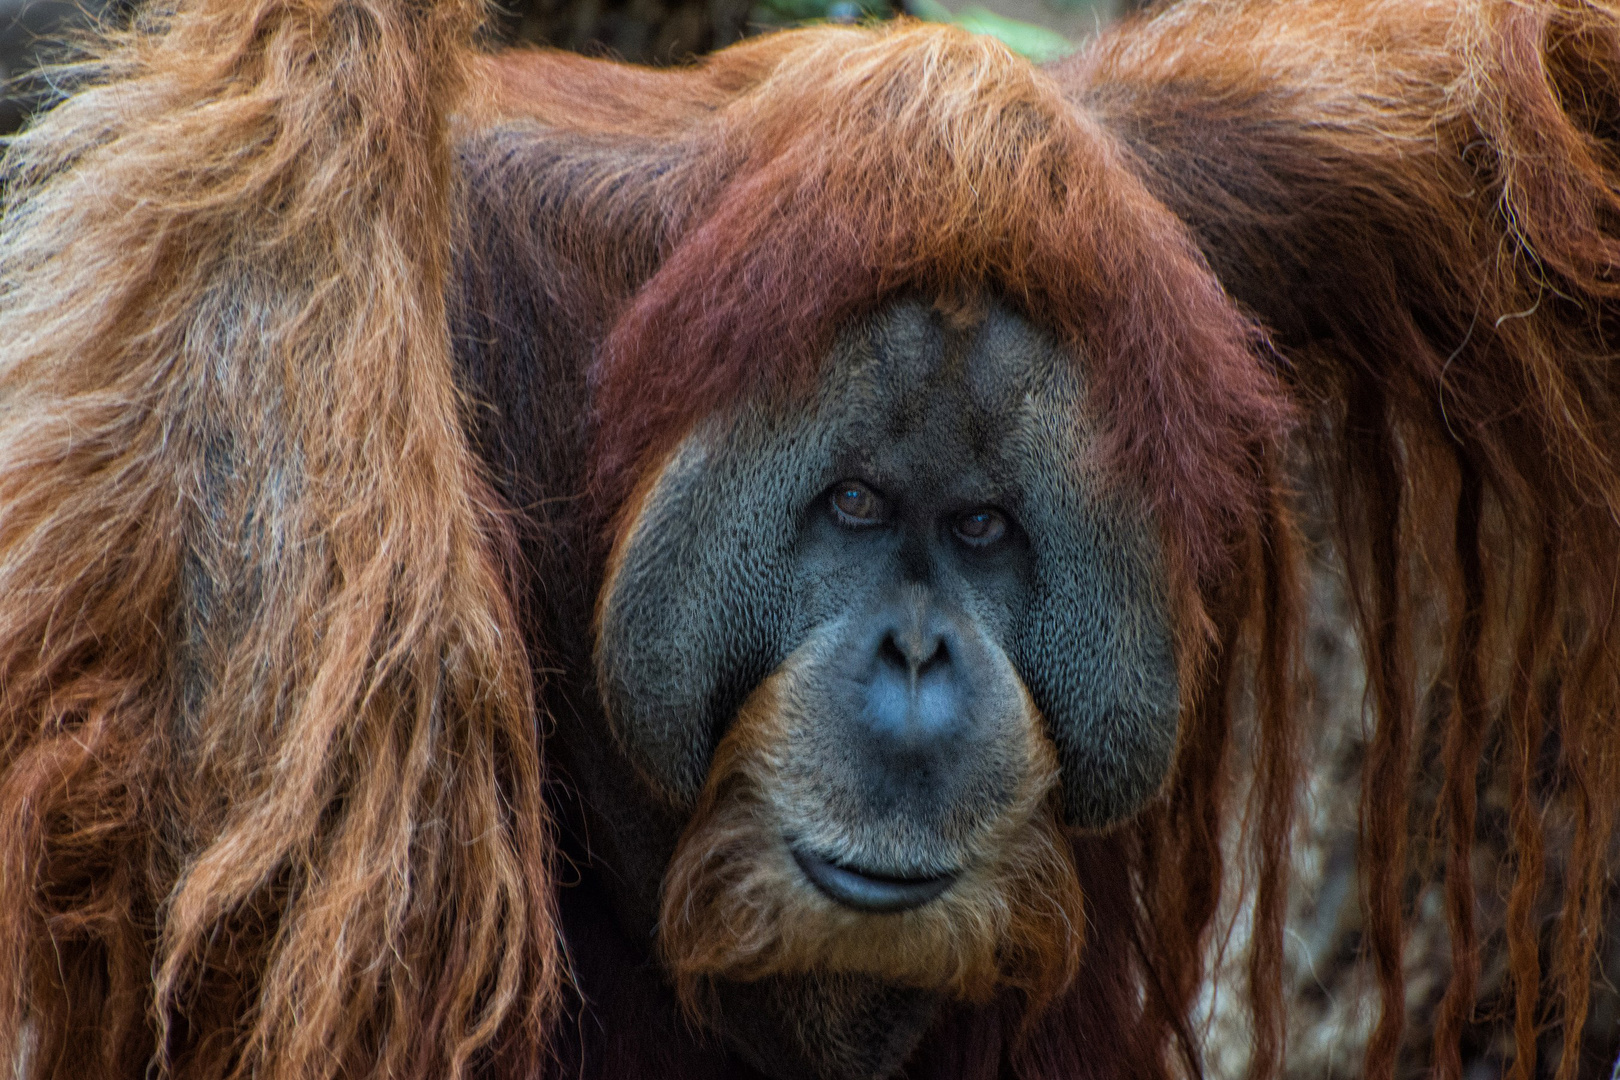 Orangutan Portrait